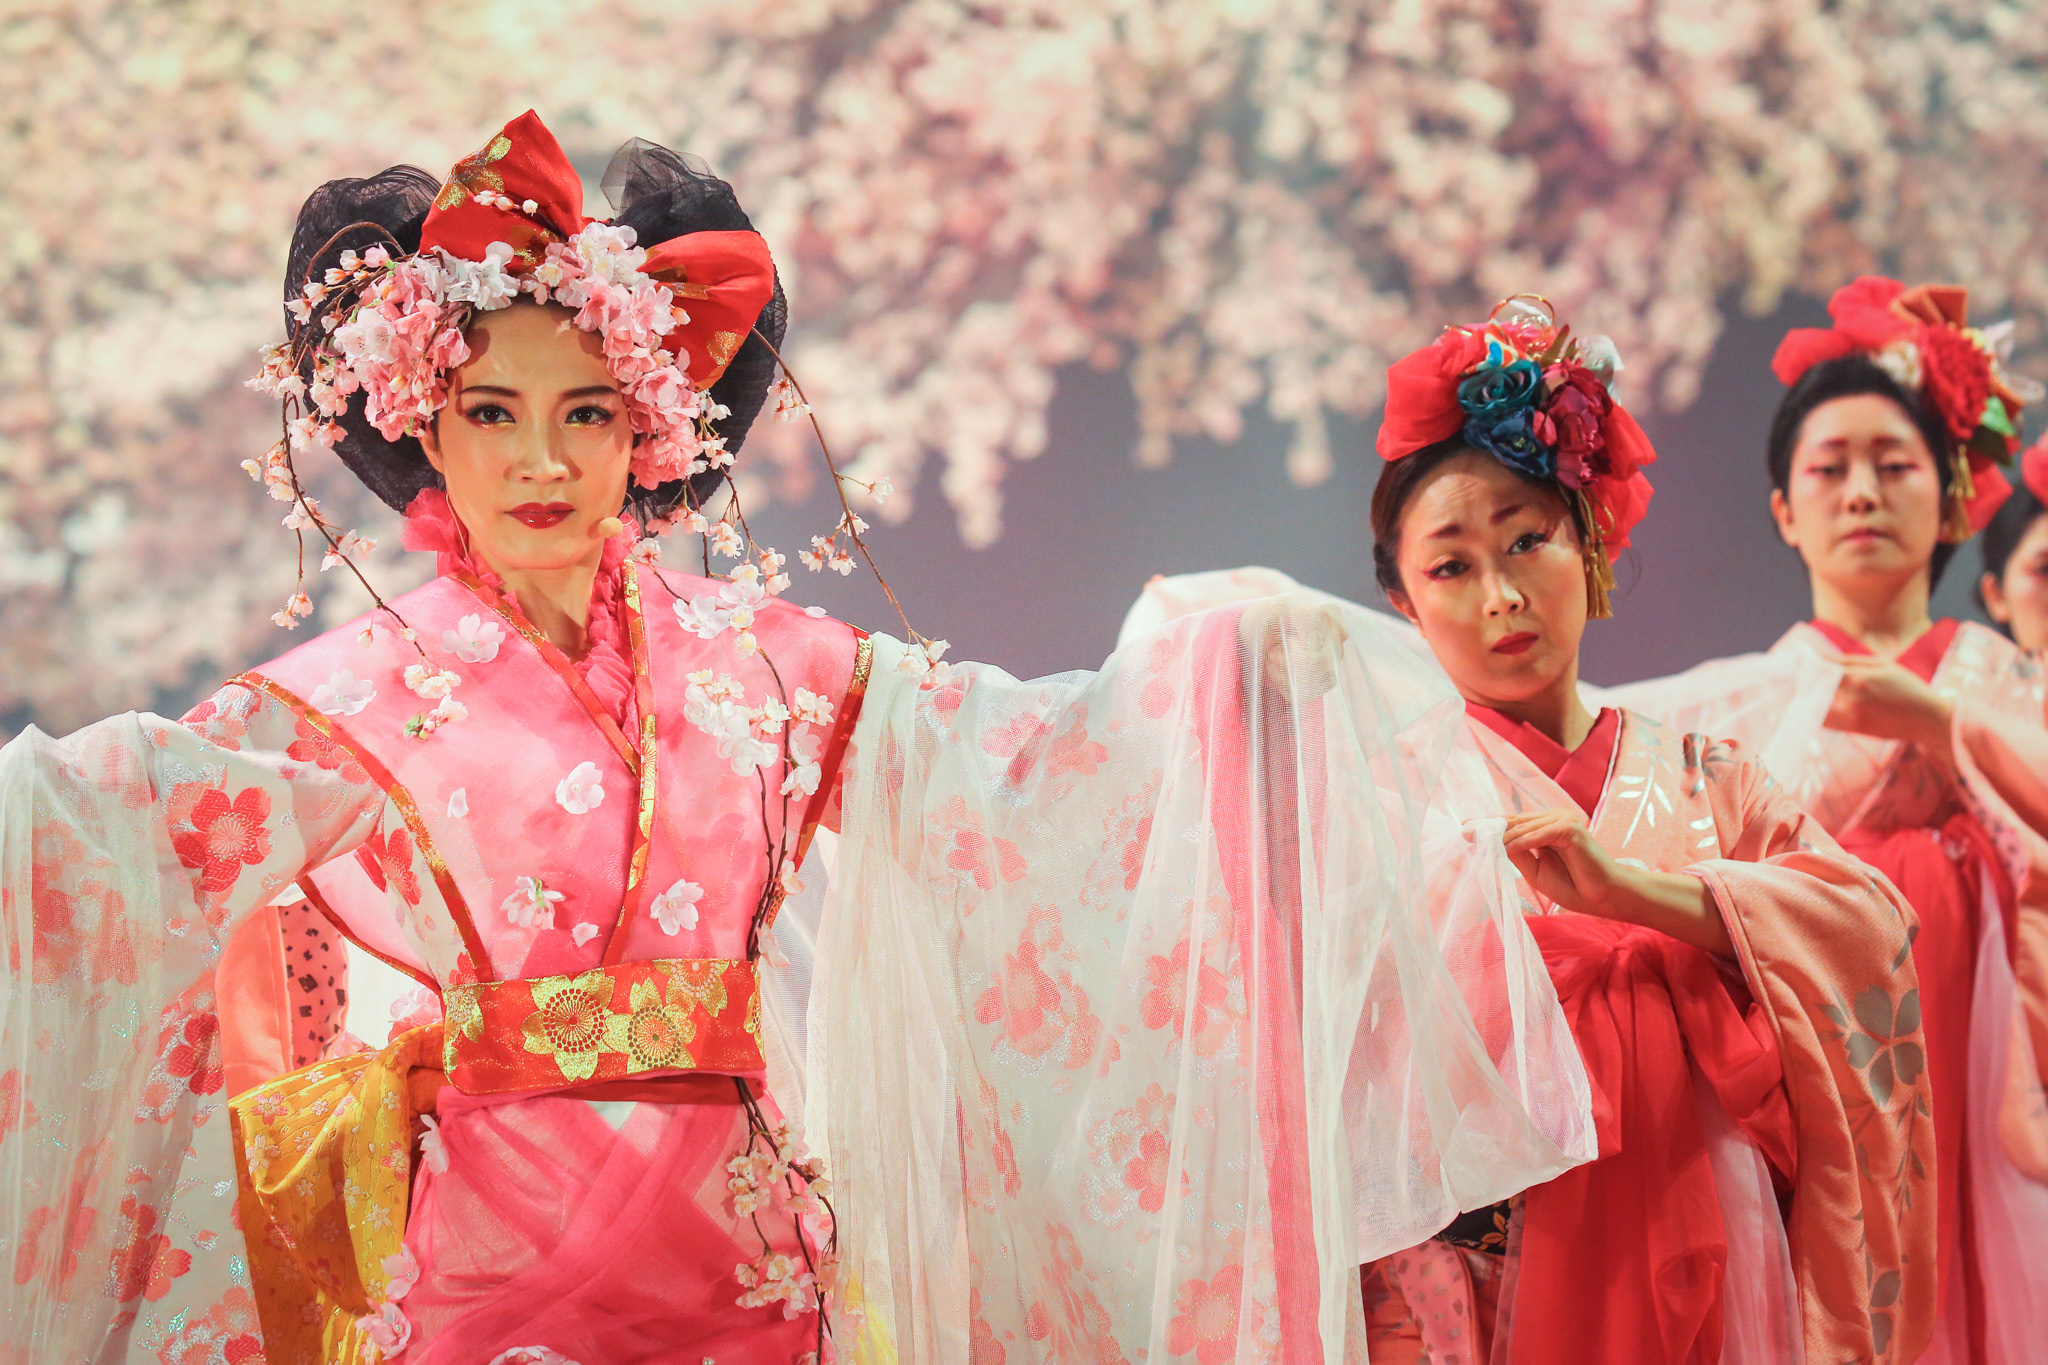 物語の世界へと入り込めるイマーシブシアター サクラヒメ が京都 南座で開幕 日本最古の劇場で最先端の演劇体験を Spice Goo ニュース